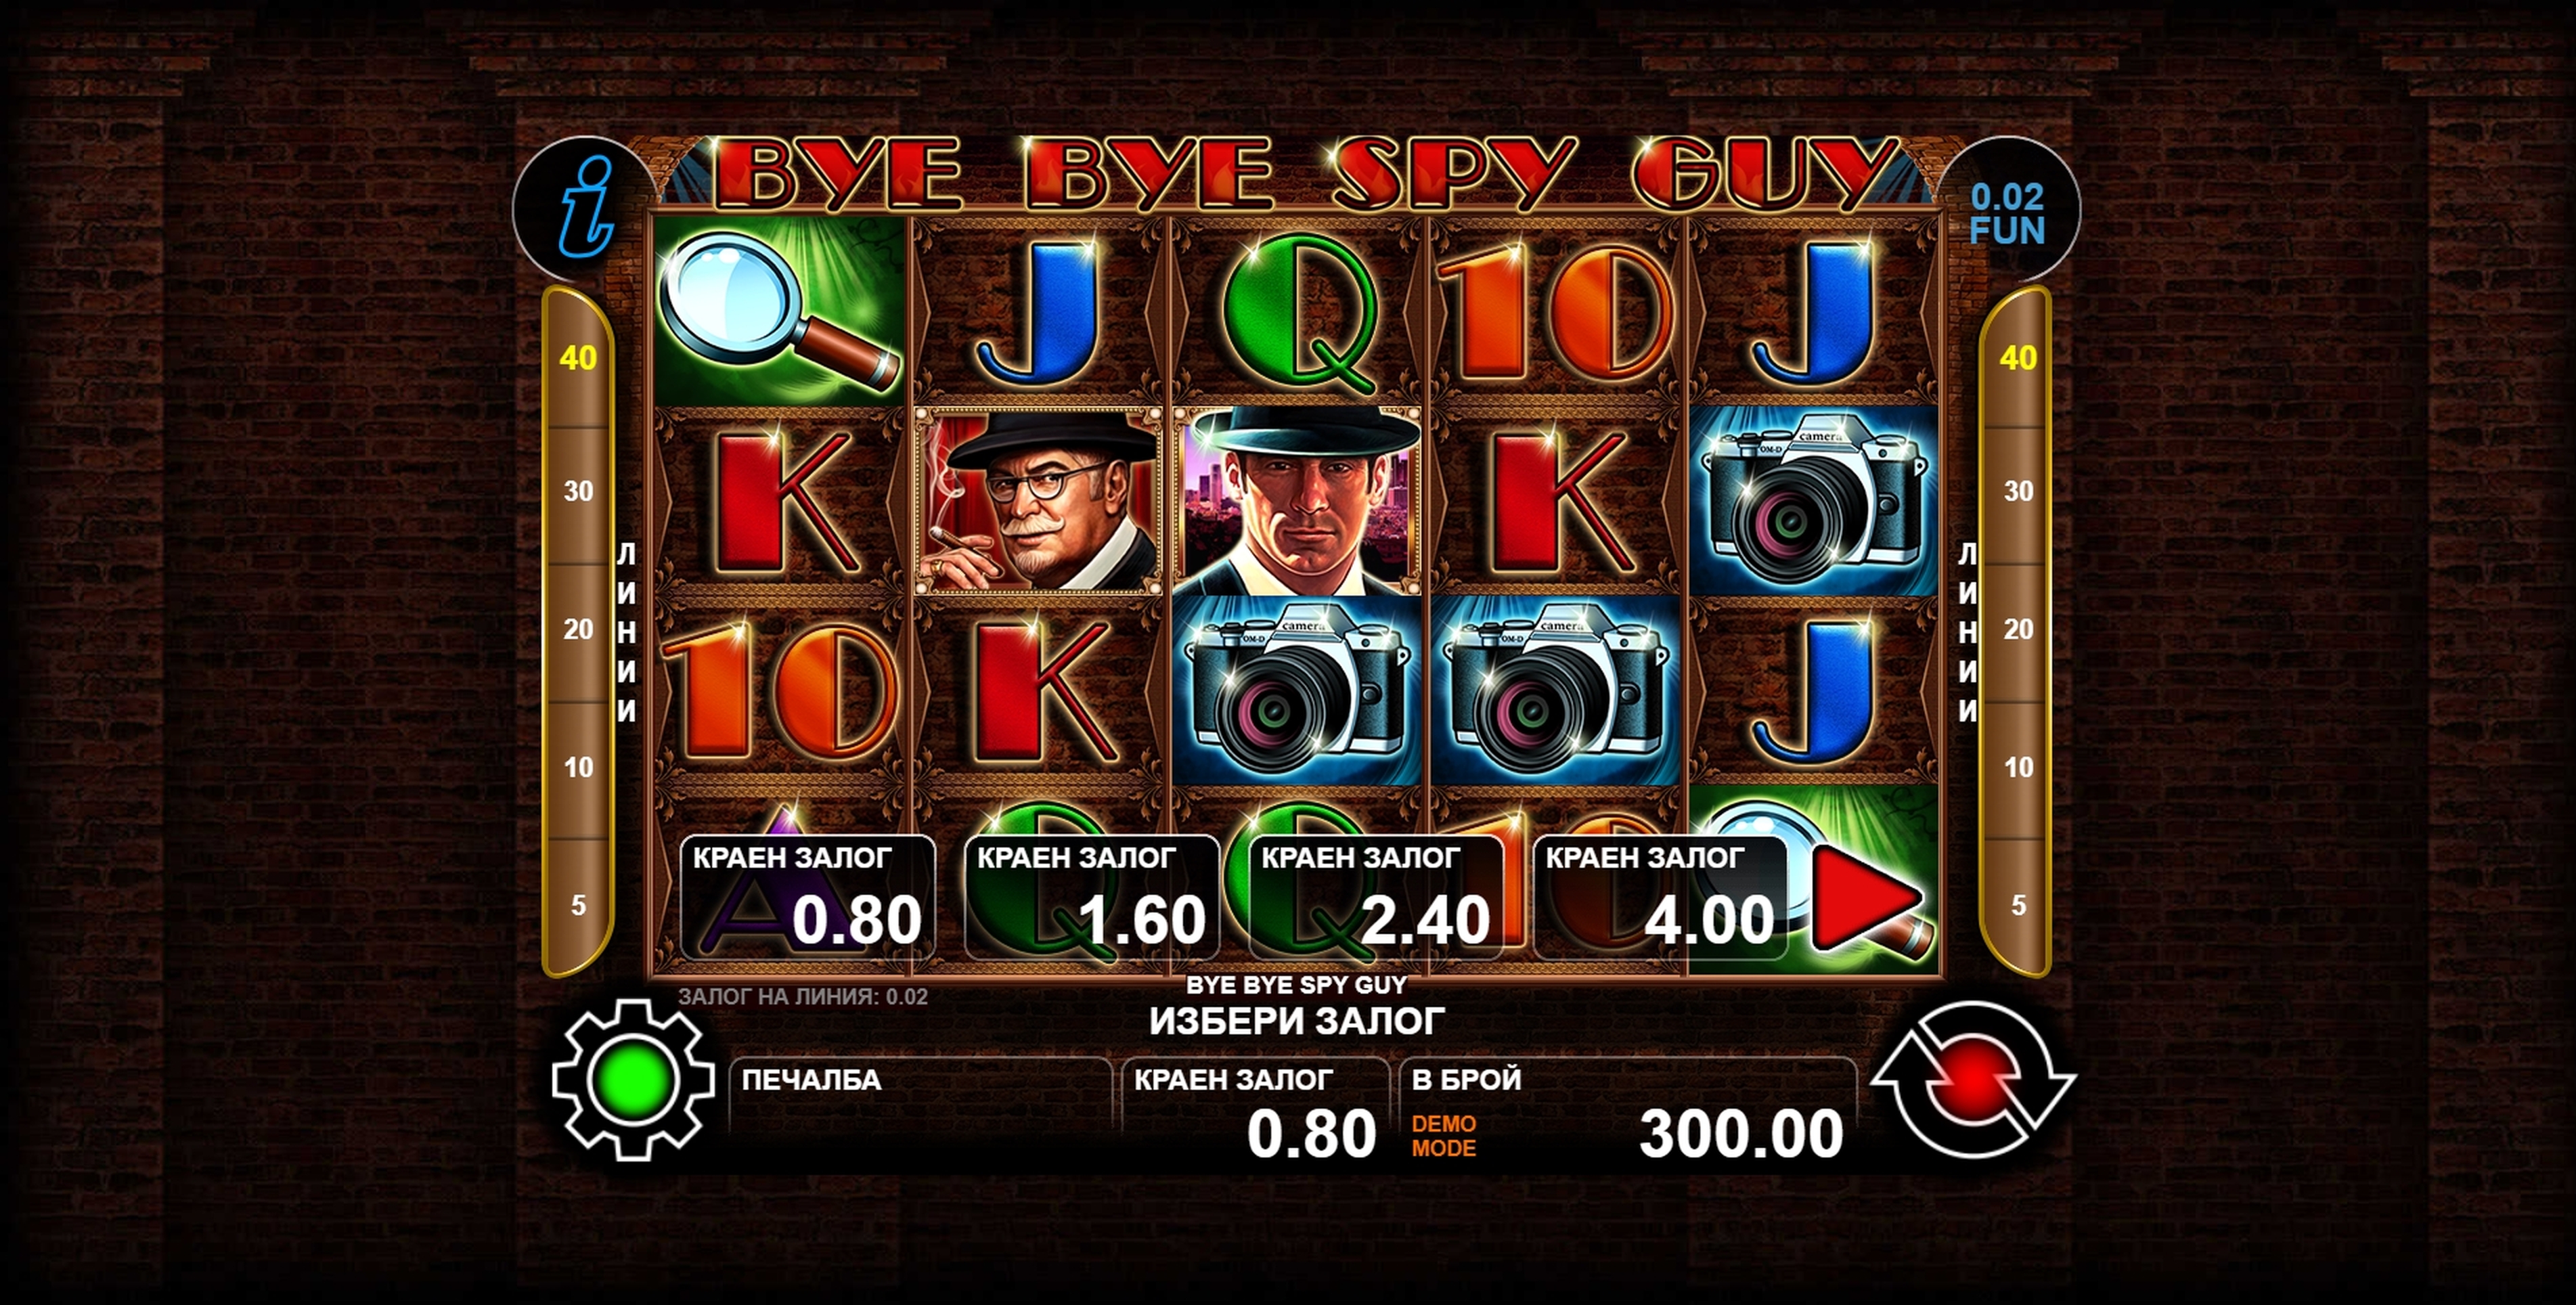 Reels in Bye Bye Spy Guy Slot Game by casino technology